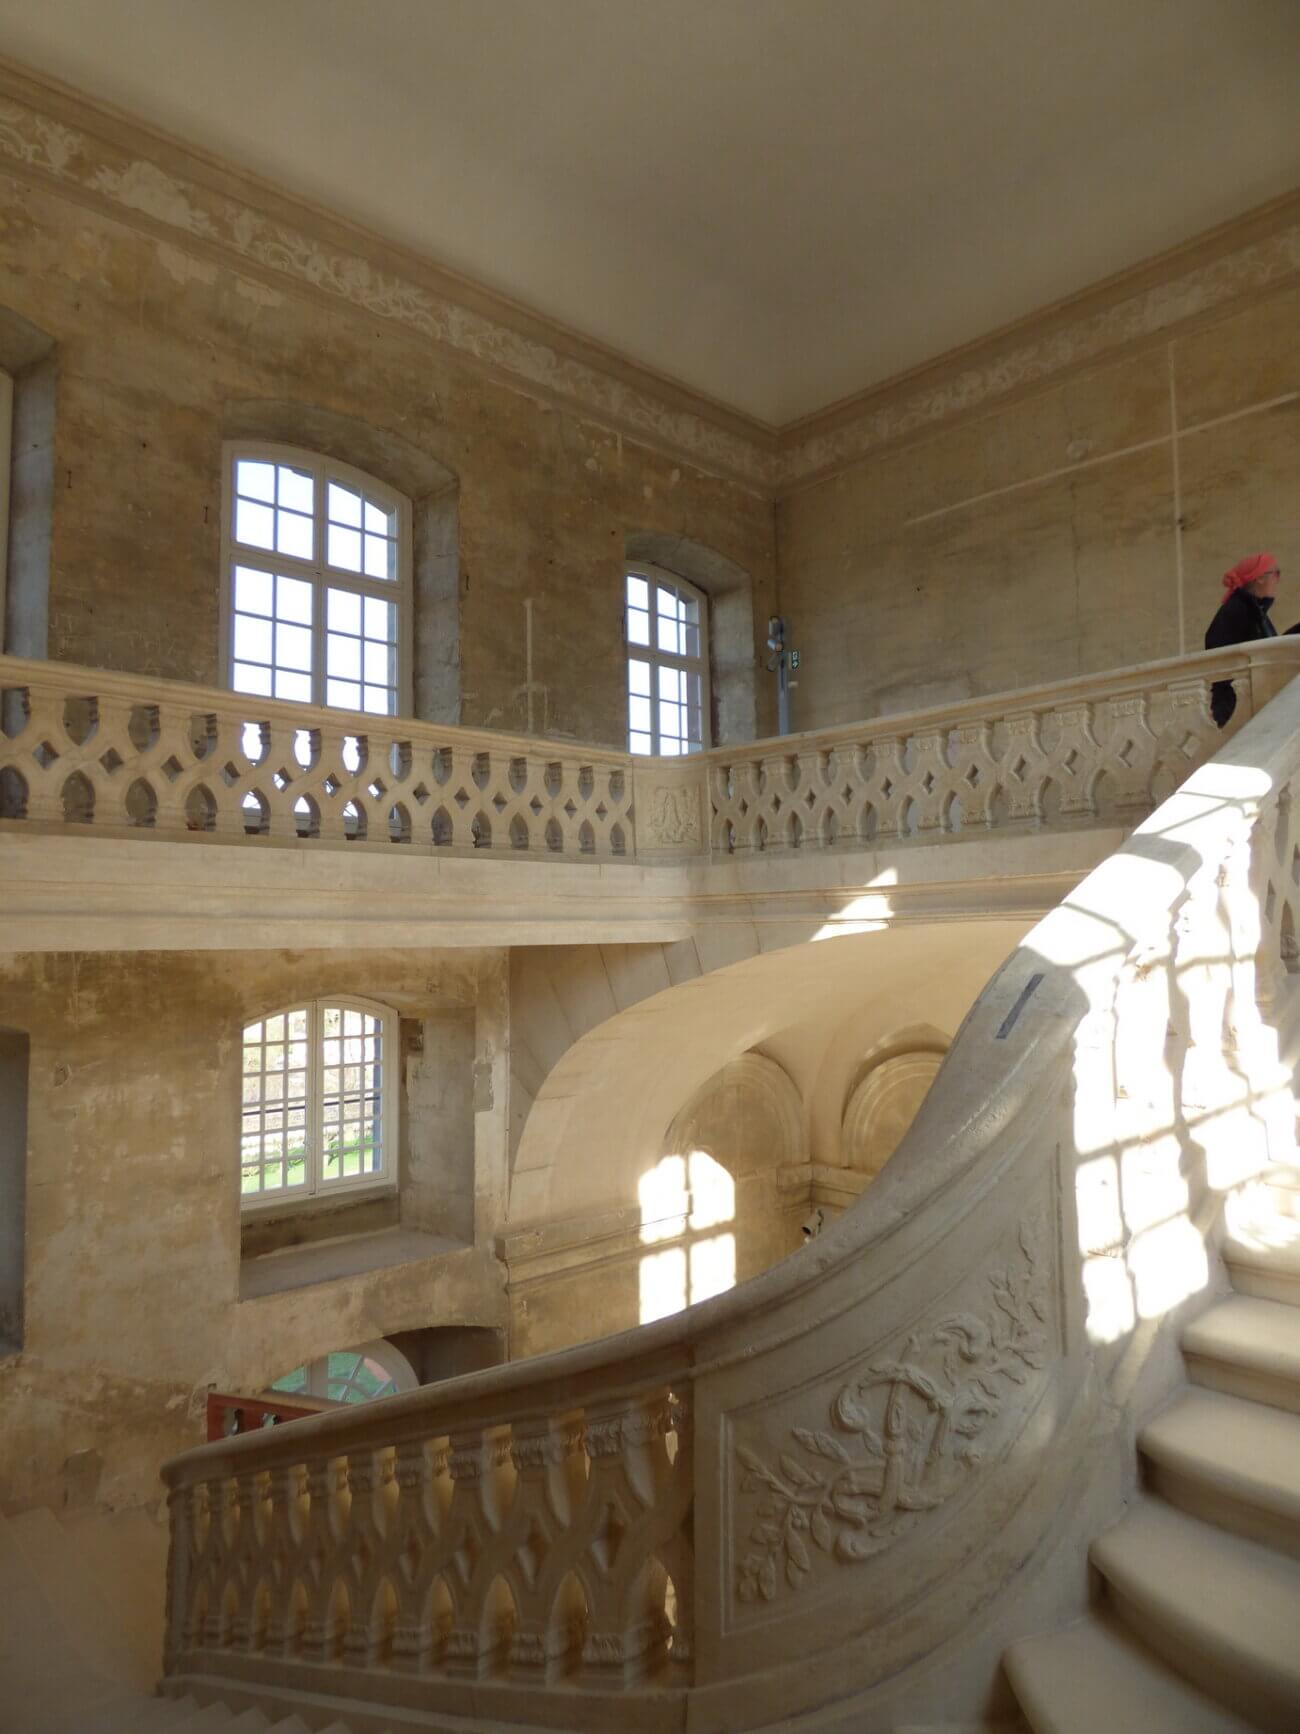 Lunéville – Escalier Nord du Château